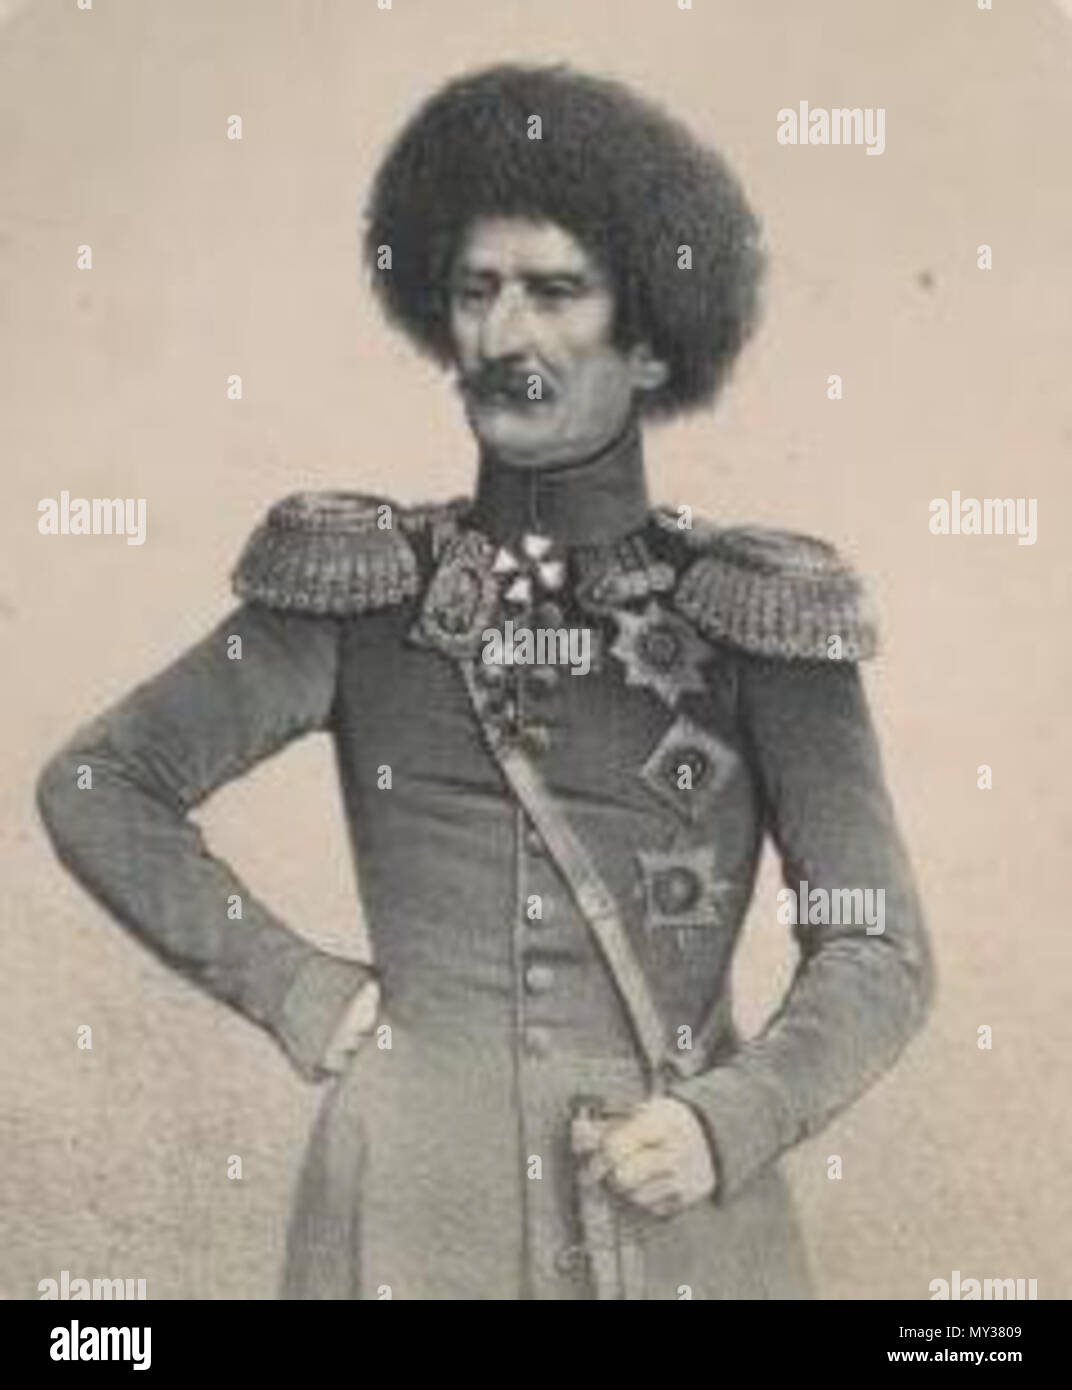 . General-Leitenant kniaz' V. O. Bebutov. published 1851-1862. Timm, Vasilii Fedorovich, 1820-1895 -- Artist. 544 V. O. Bebutov (B) Stock Photo